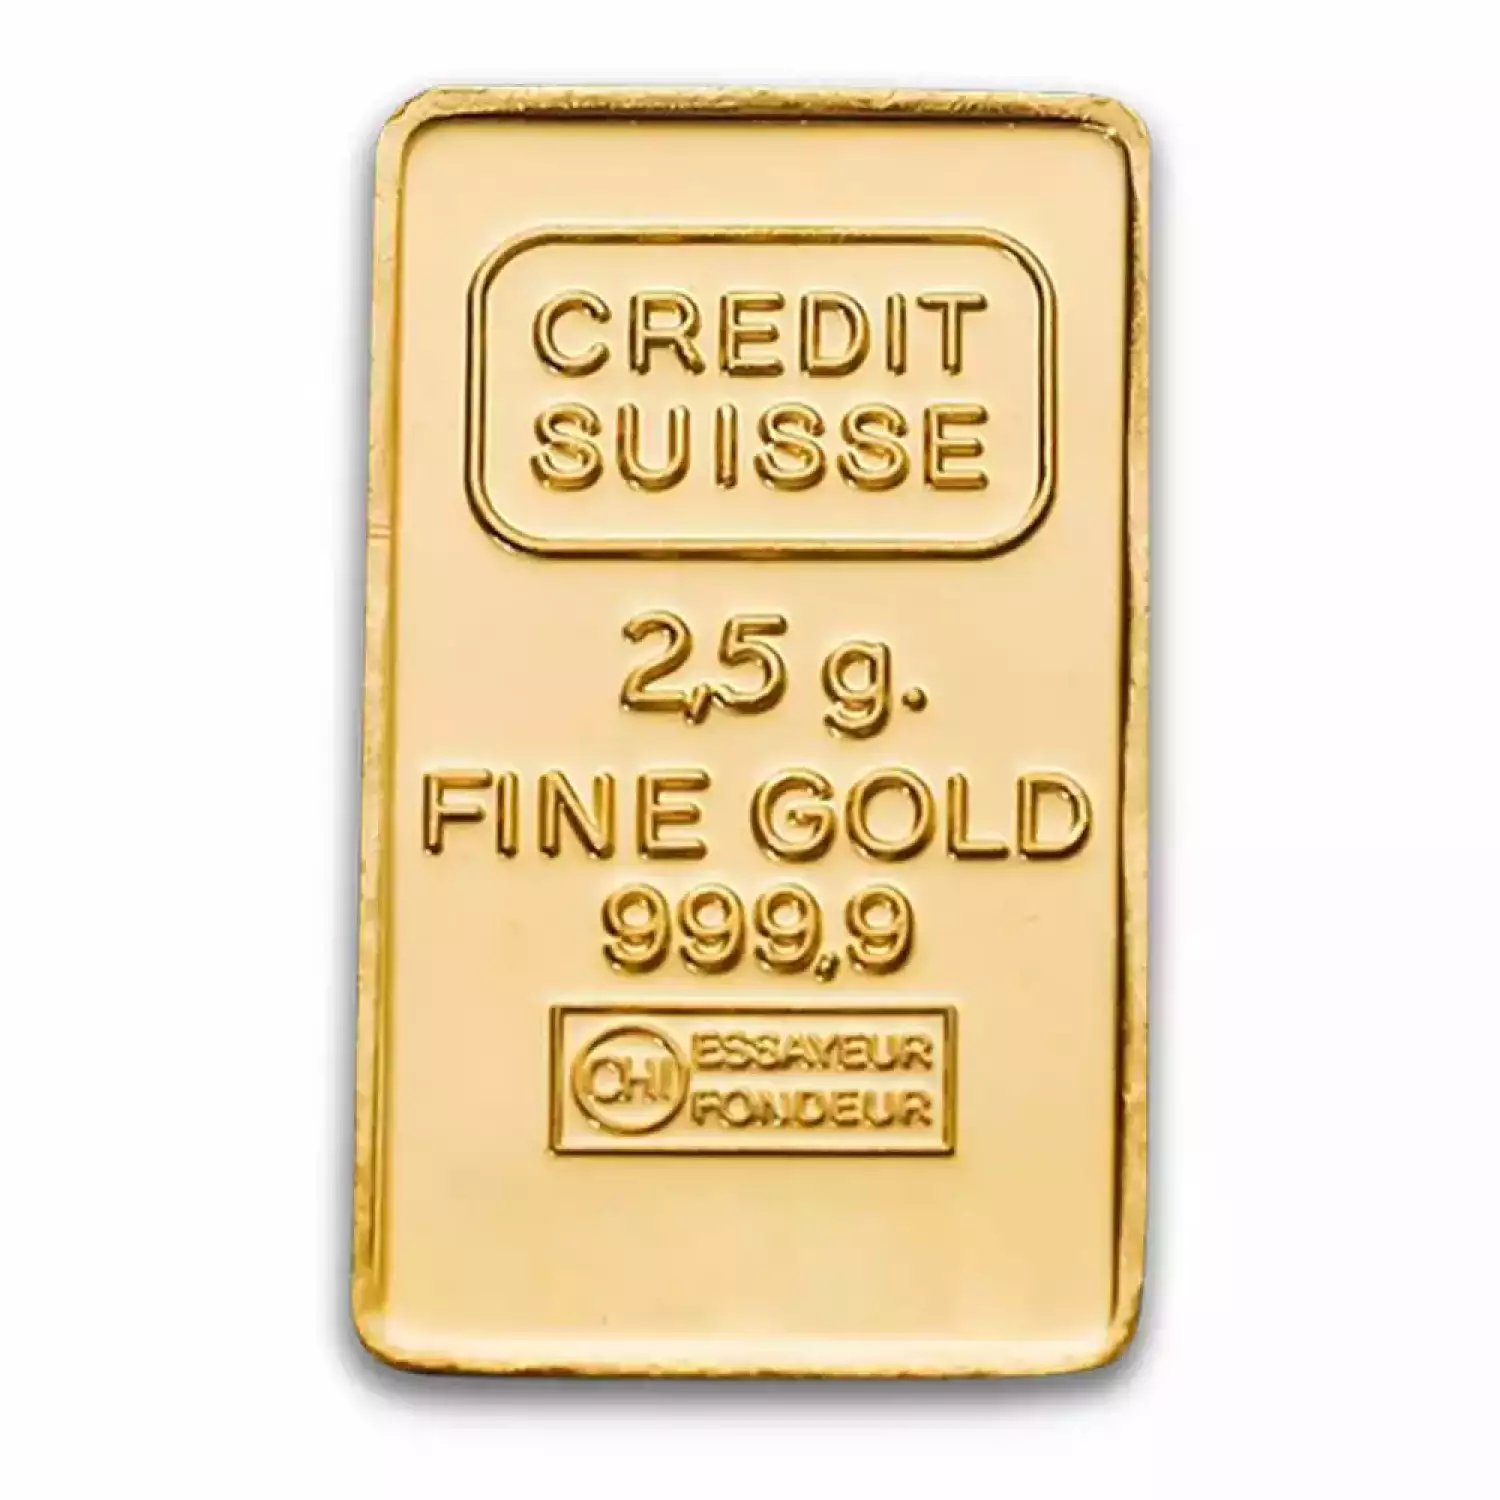 2.5 g Credit Suisse Gold Bar (2)